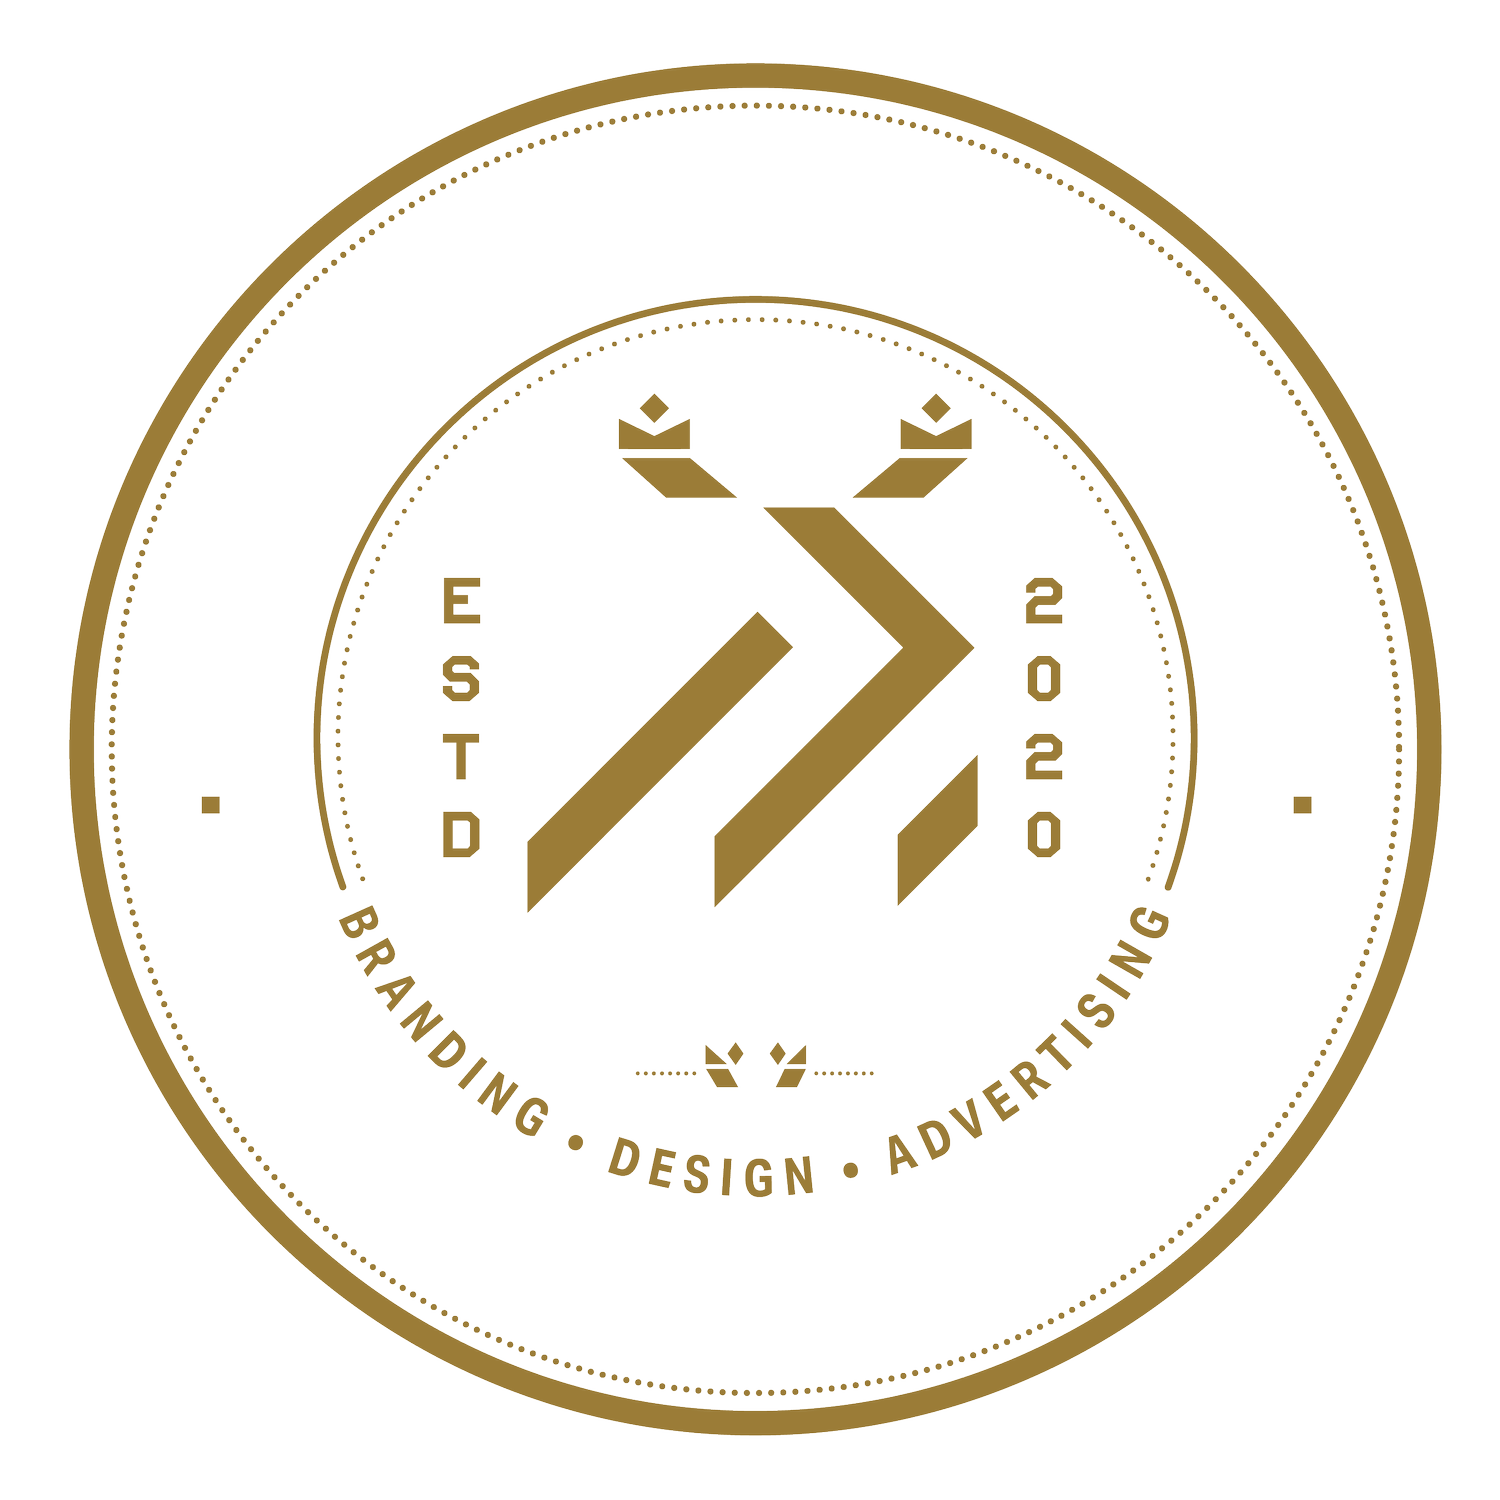 LEFTYLEON CREATIVE AGENCY